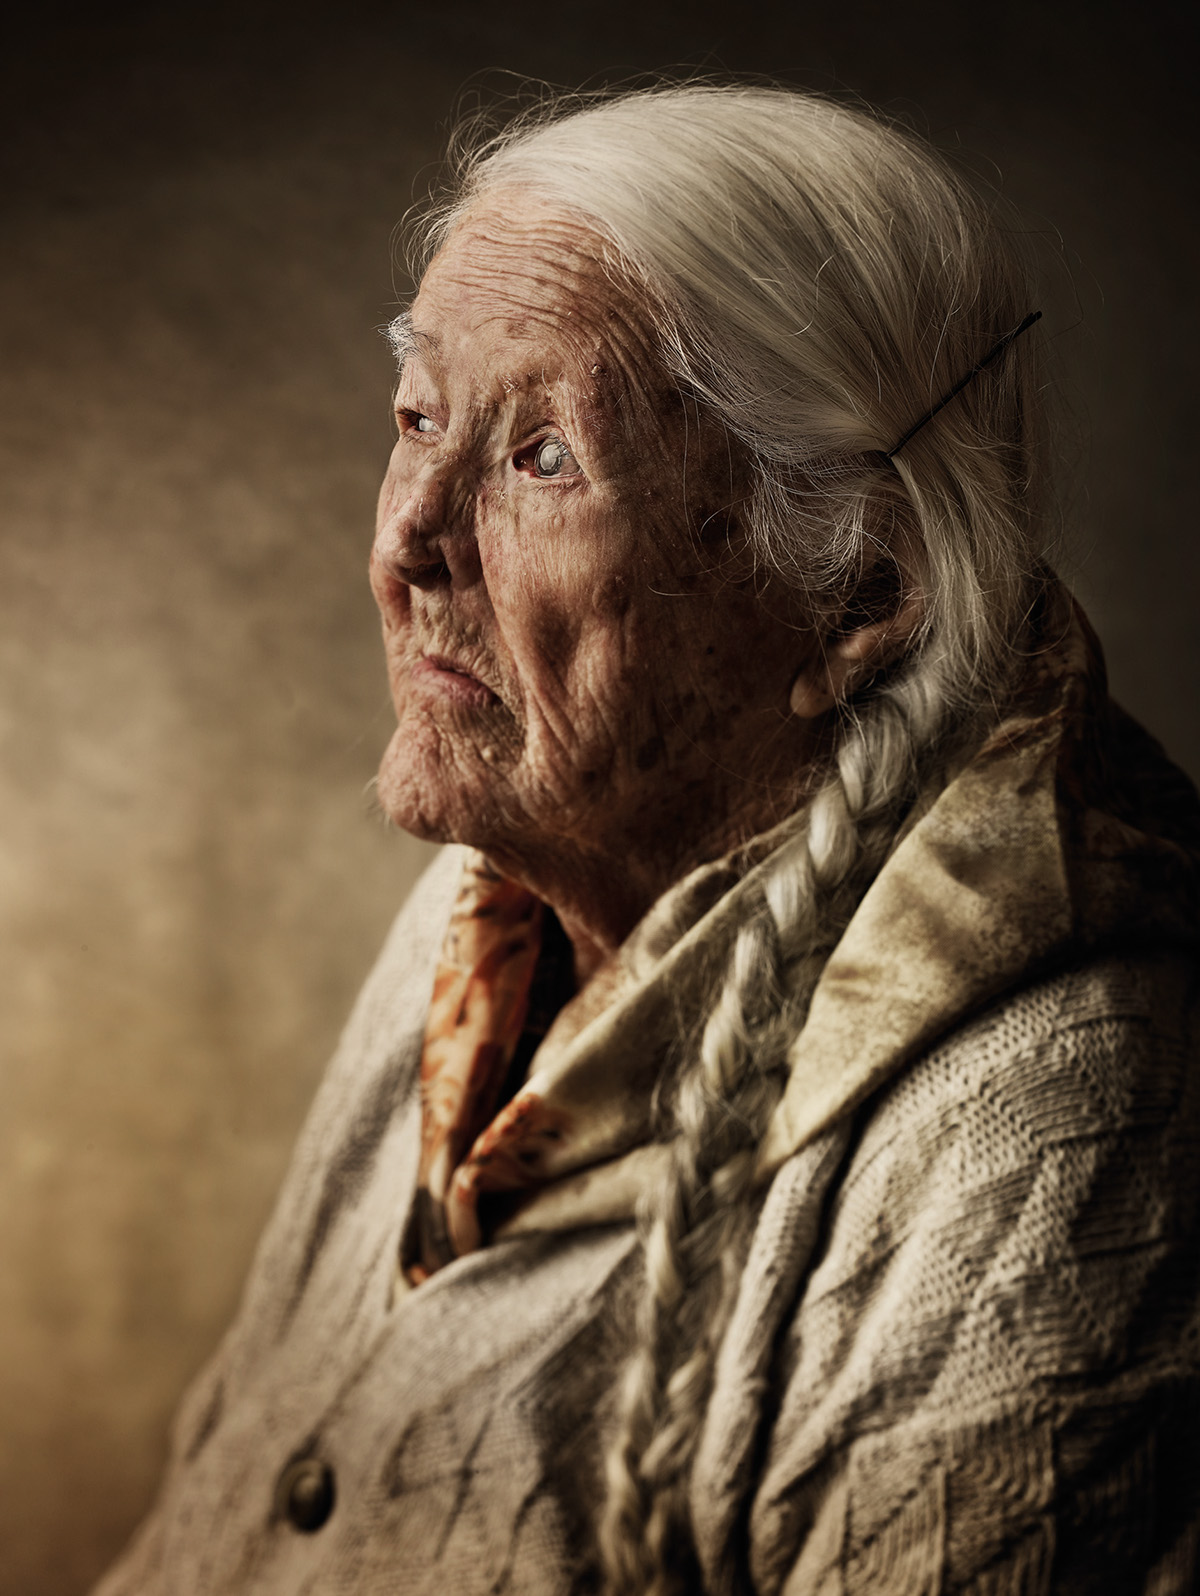 portrait retrato Portraiture retouch retoucher creative retouch Elderly Ancient faces people